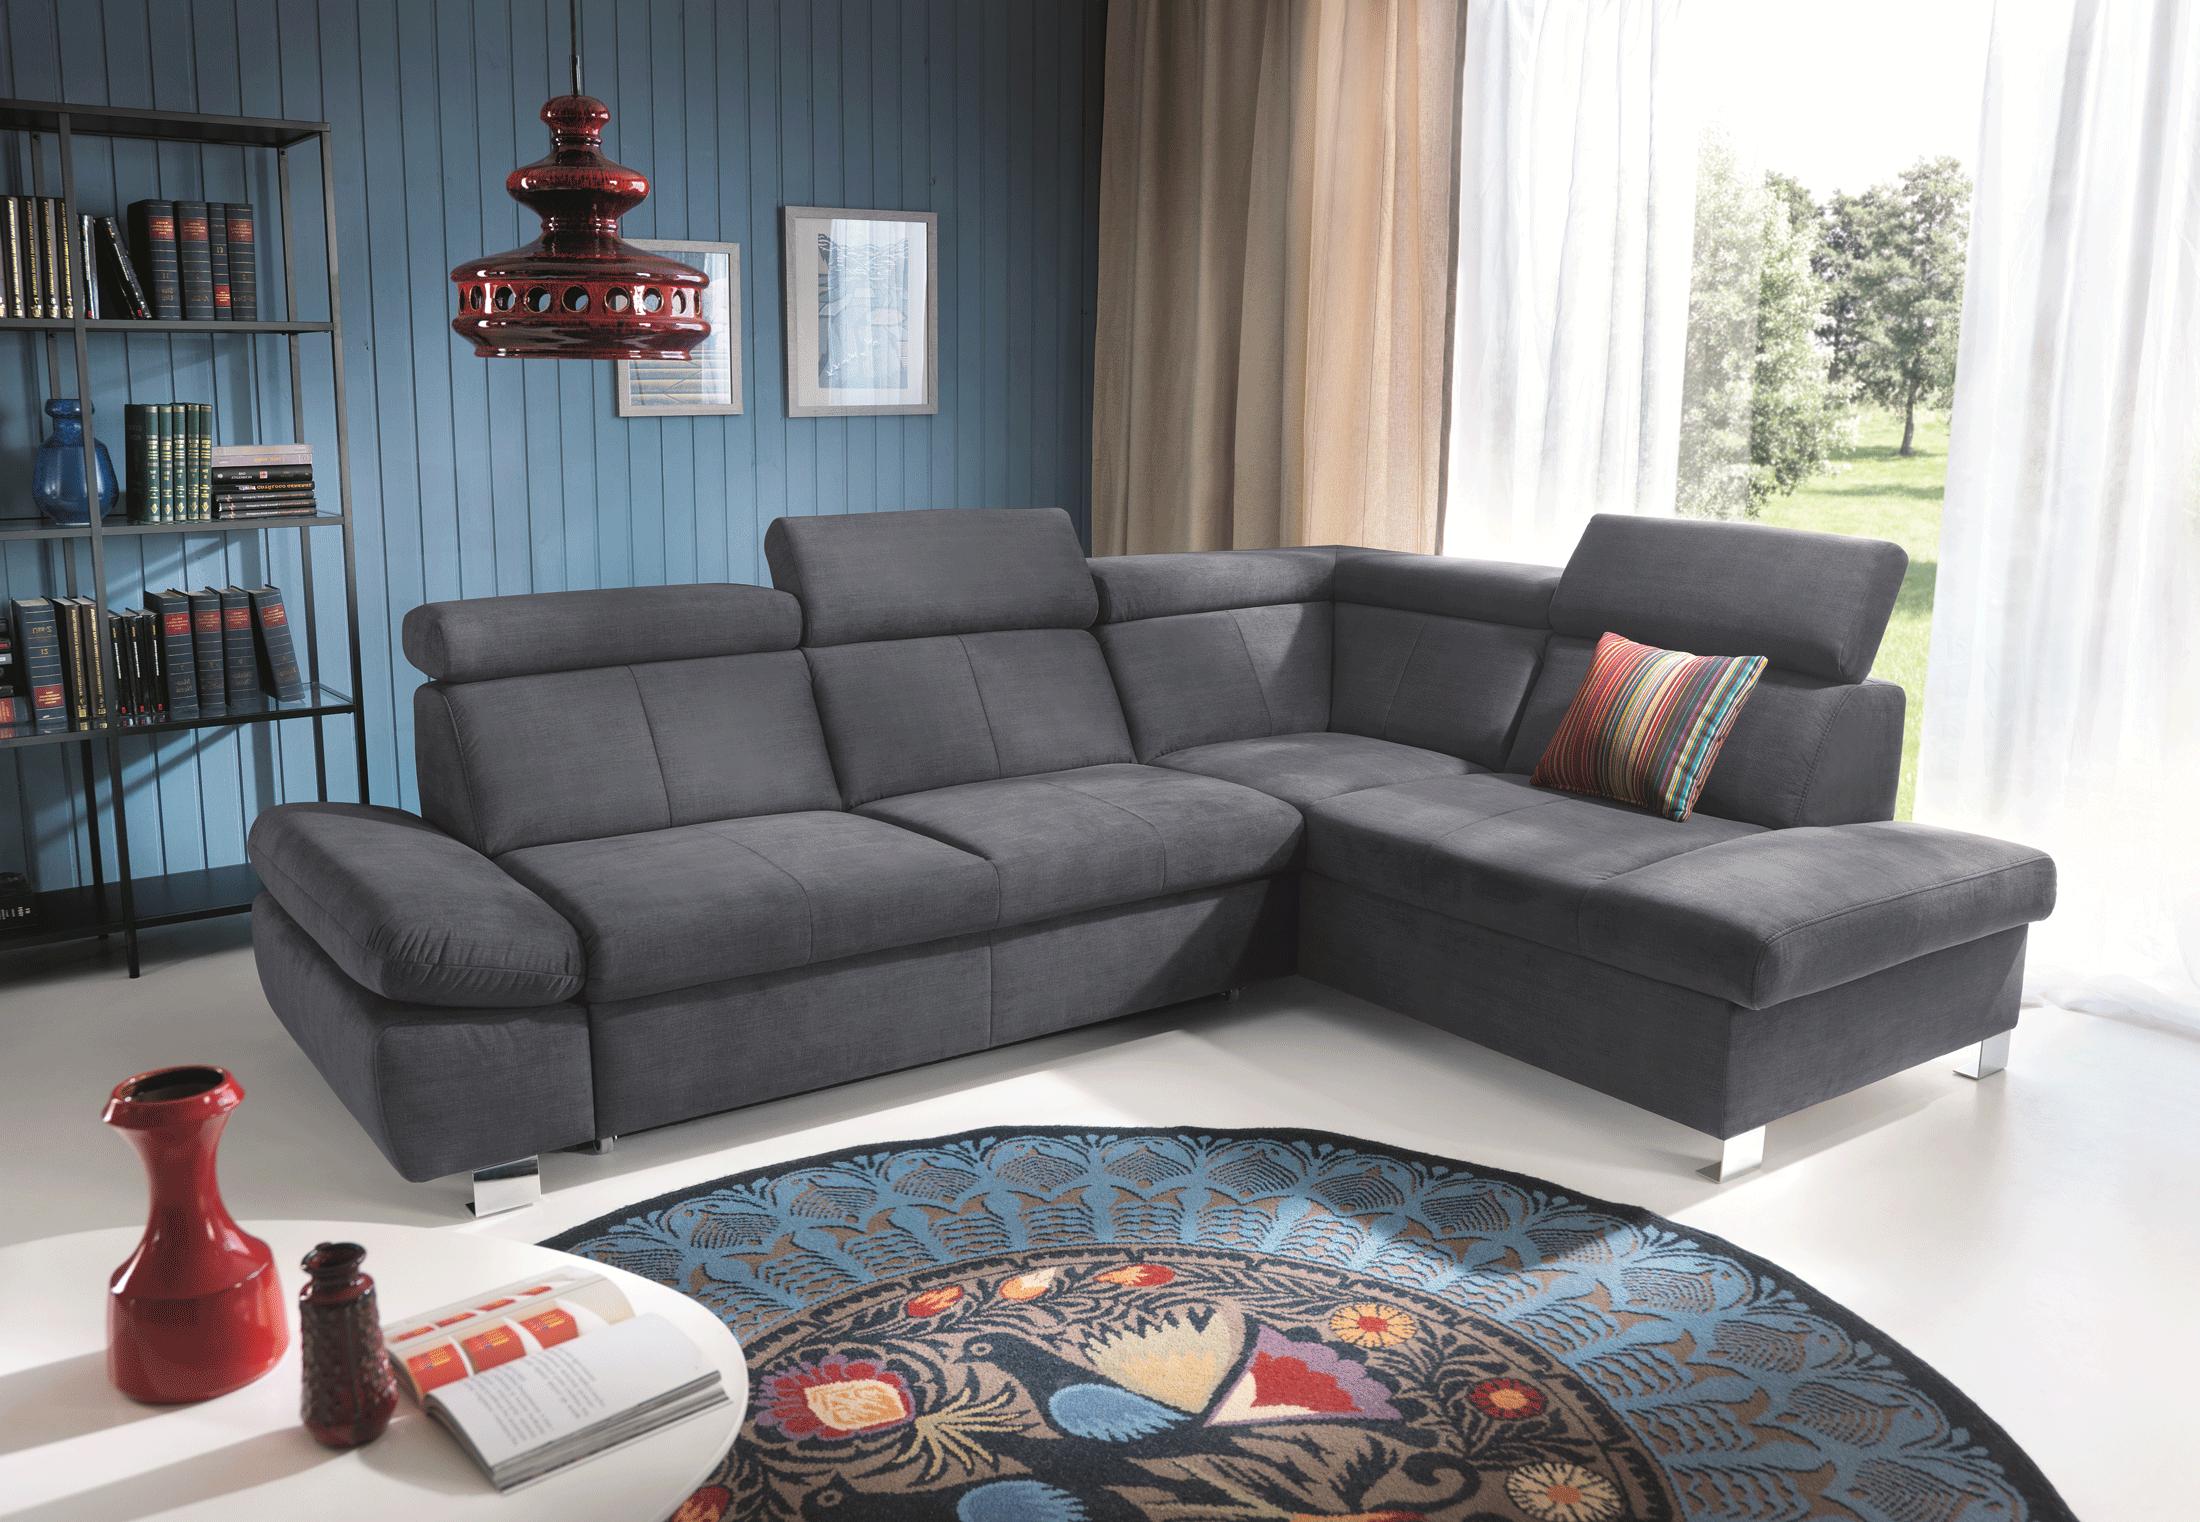 

    
Sectional Sofa RHC w/Bed & Storage Gray Fabric Modern ESF Happy
